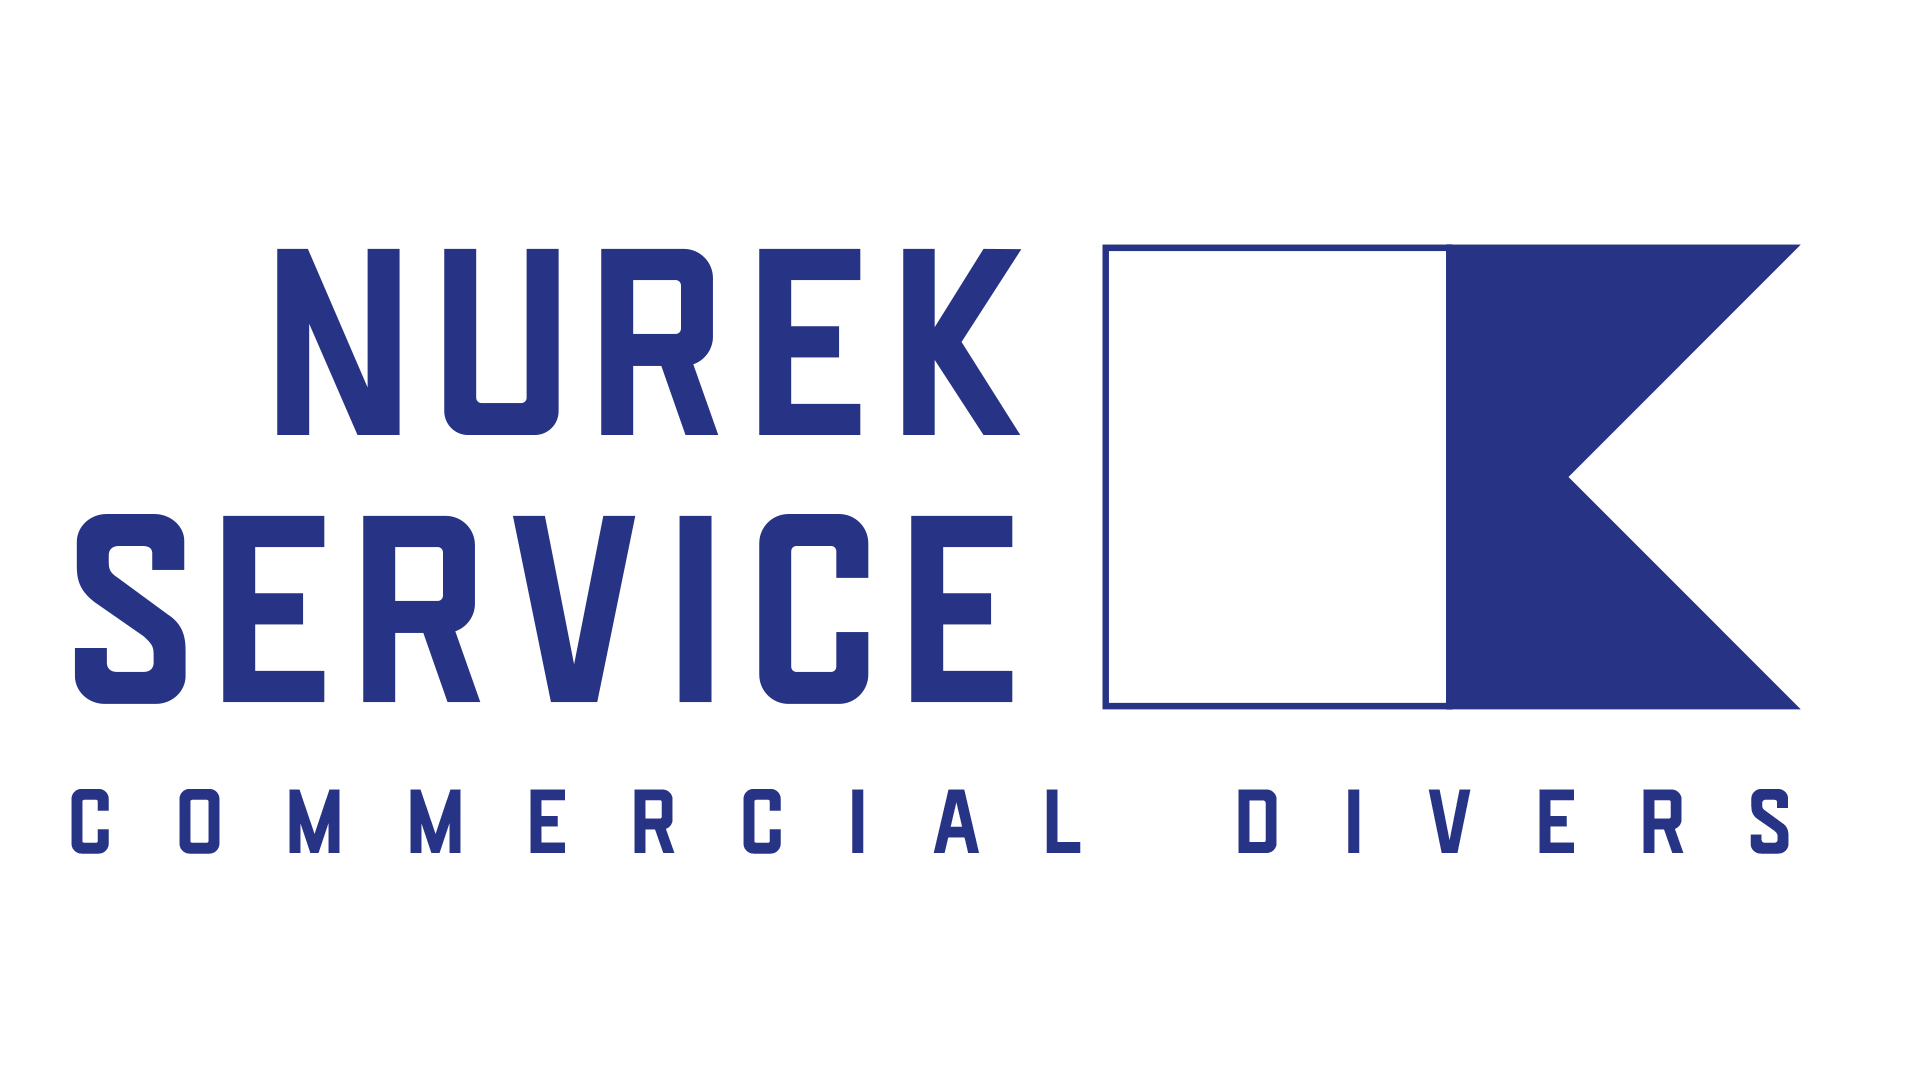 Nurek Services